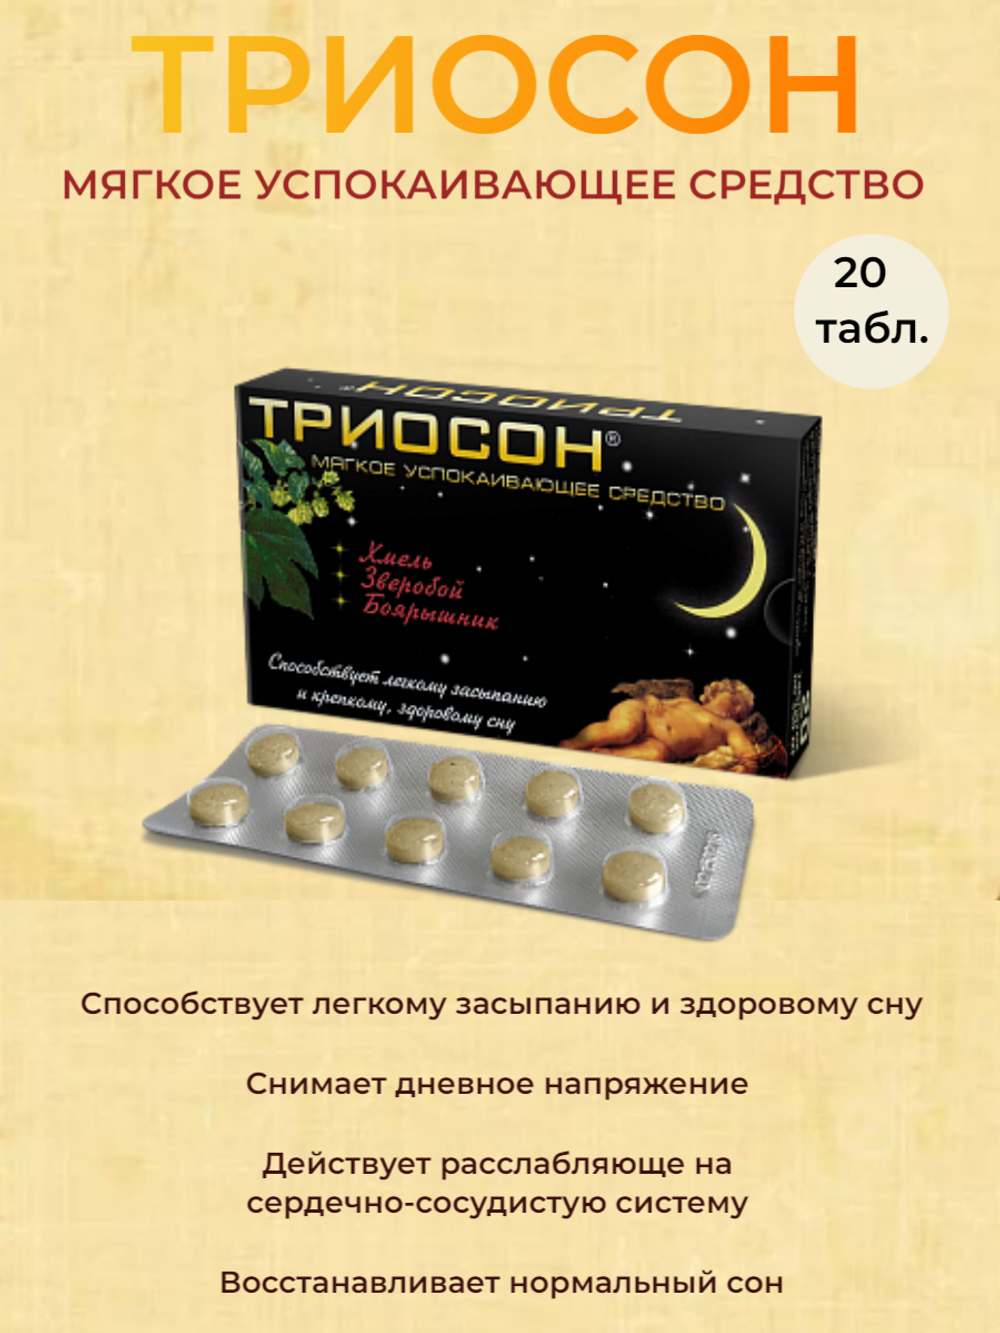 Триосон - успокаивающее и мягкое снотворное средство, 20 таблеток по 350 мг